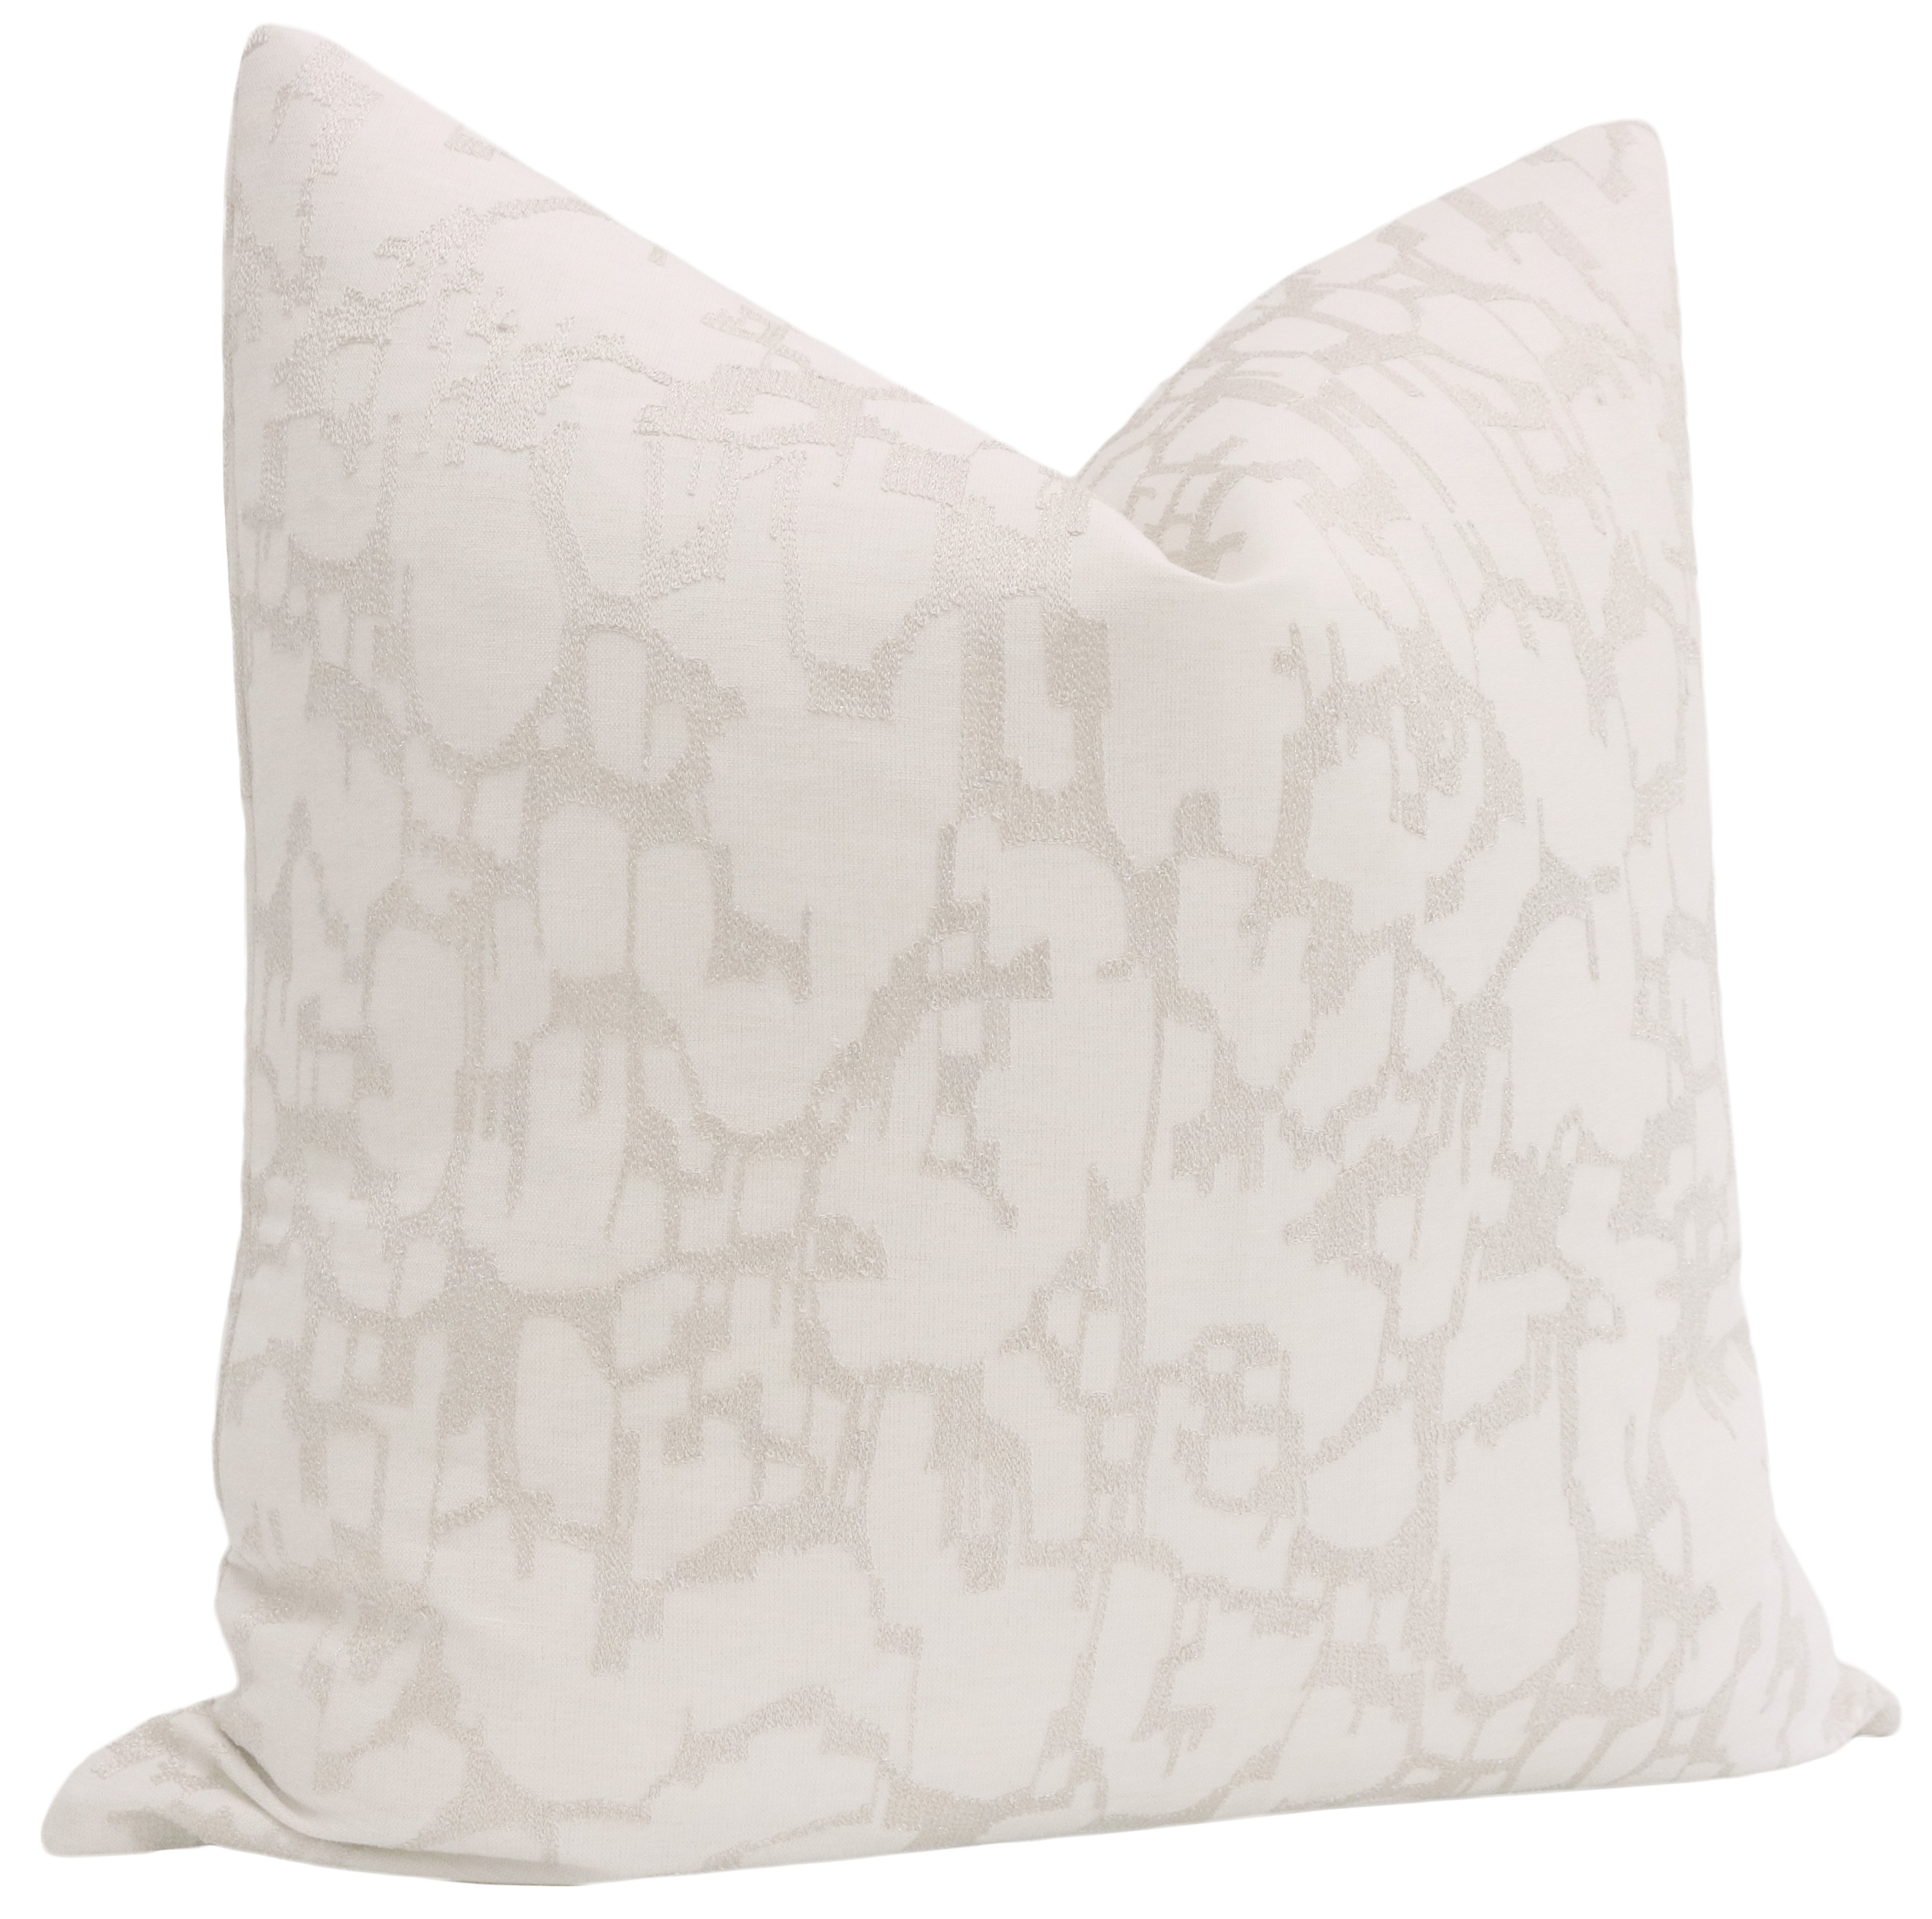 Pastiche Linen Pillow, Cashmere, 20"x 20" - Image 1